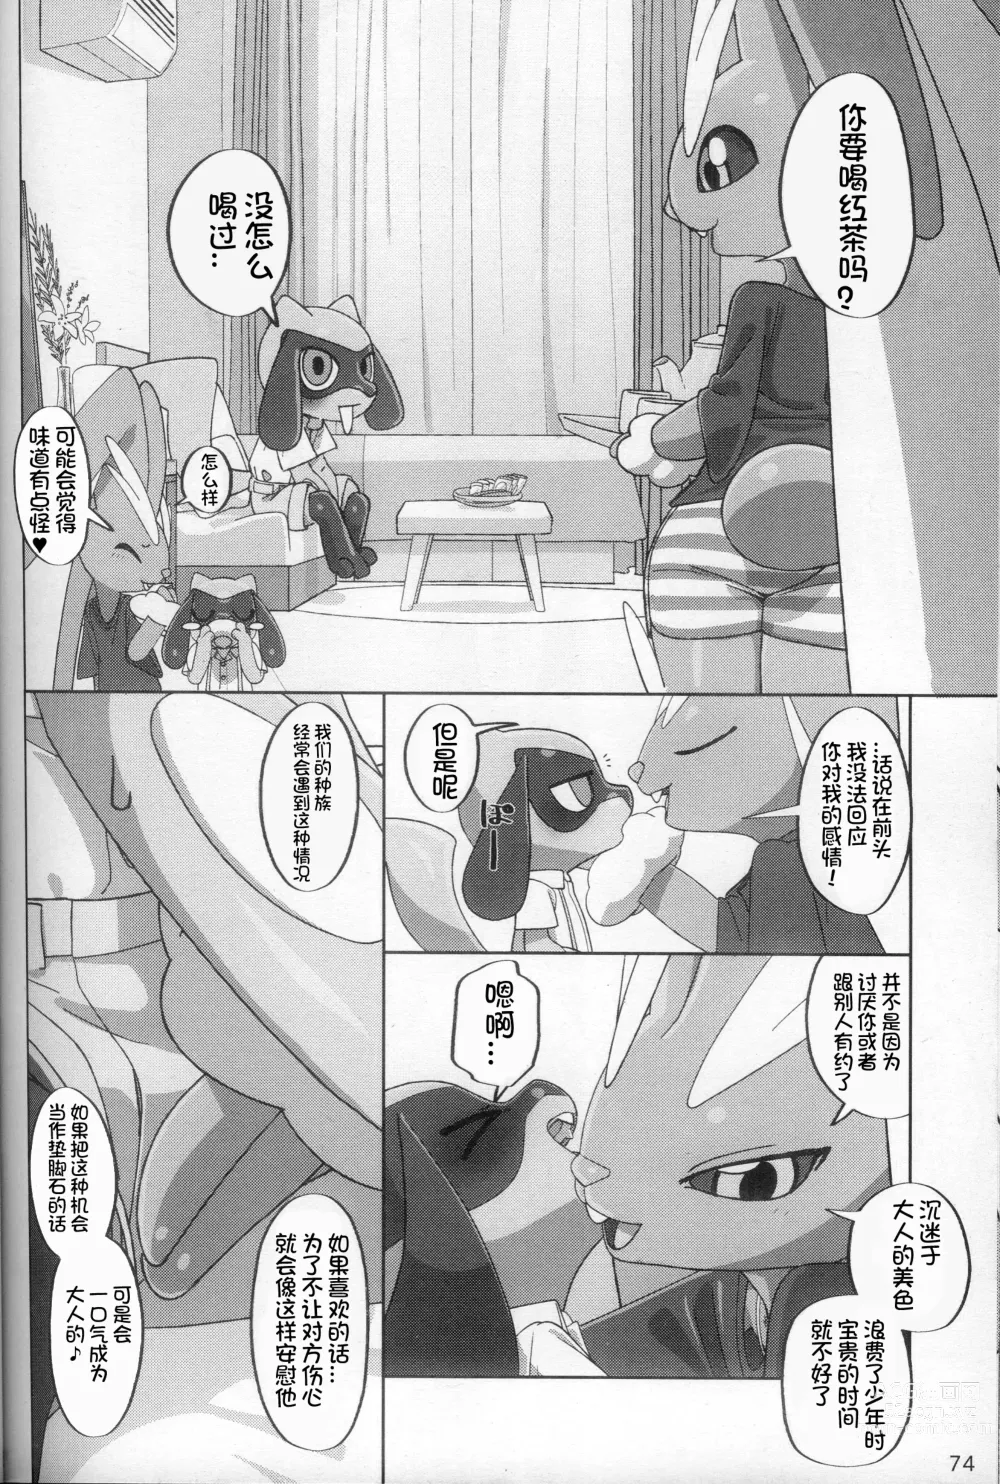 Page 74 of doujinshi 我推的工作